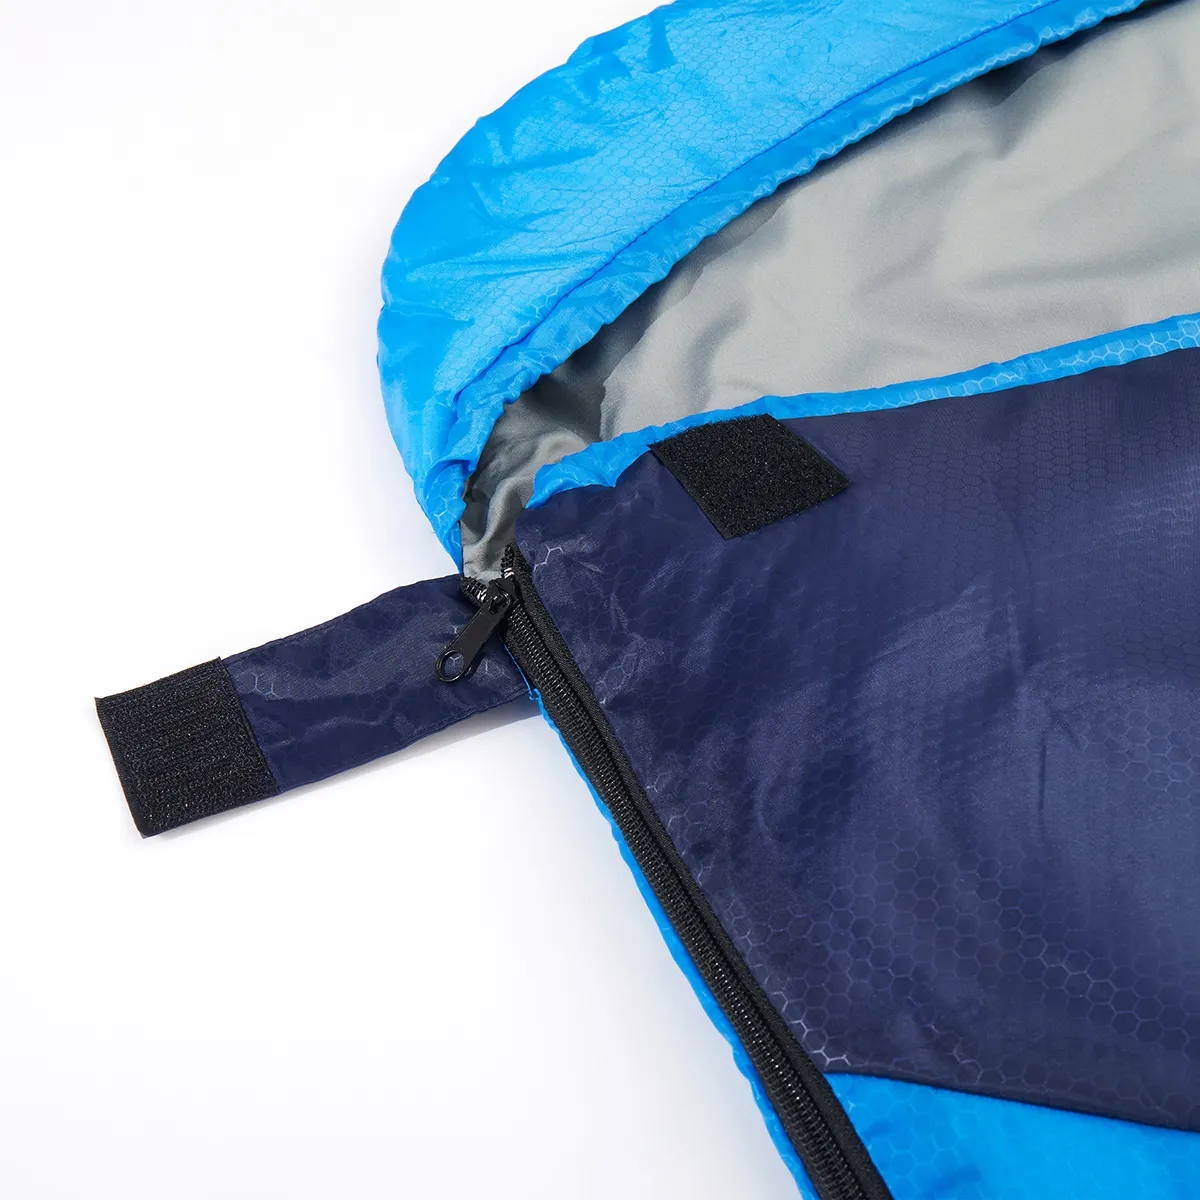 Oem-Cina-grosir kantong tidur serat berongga dewasa musim dingin luar ruangan perlengkapan untuk berkemah mendaki di backcountry